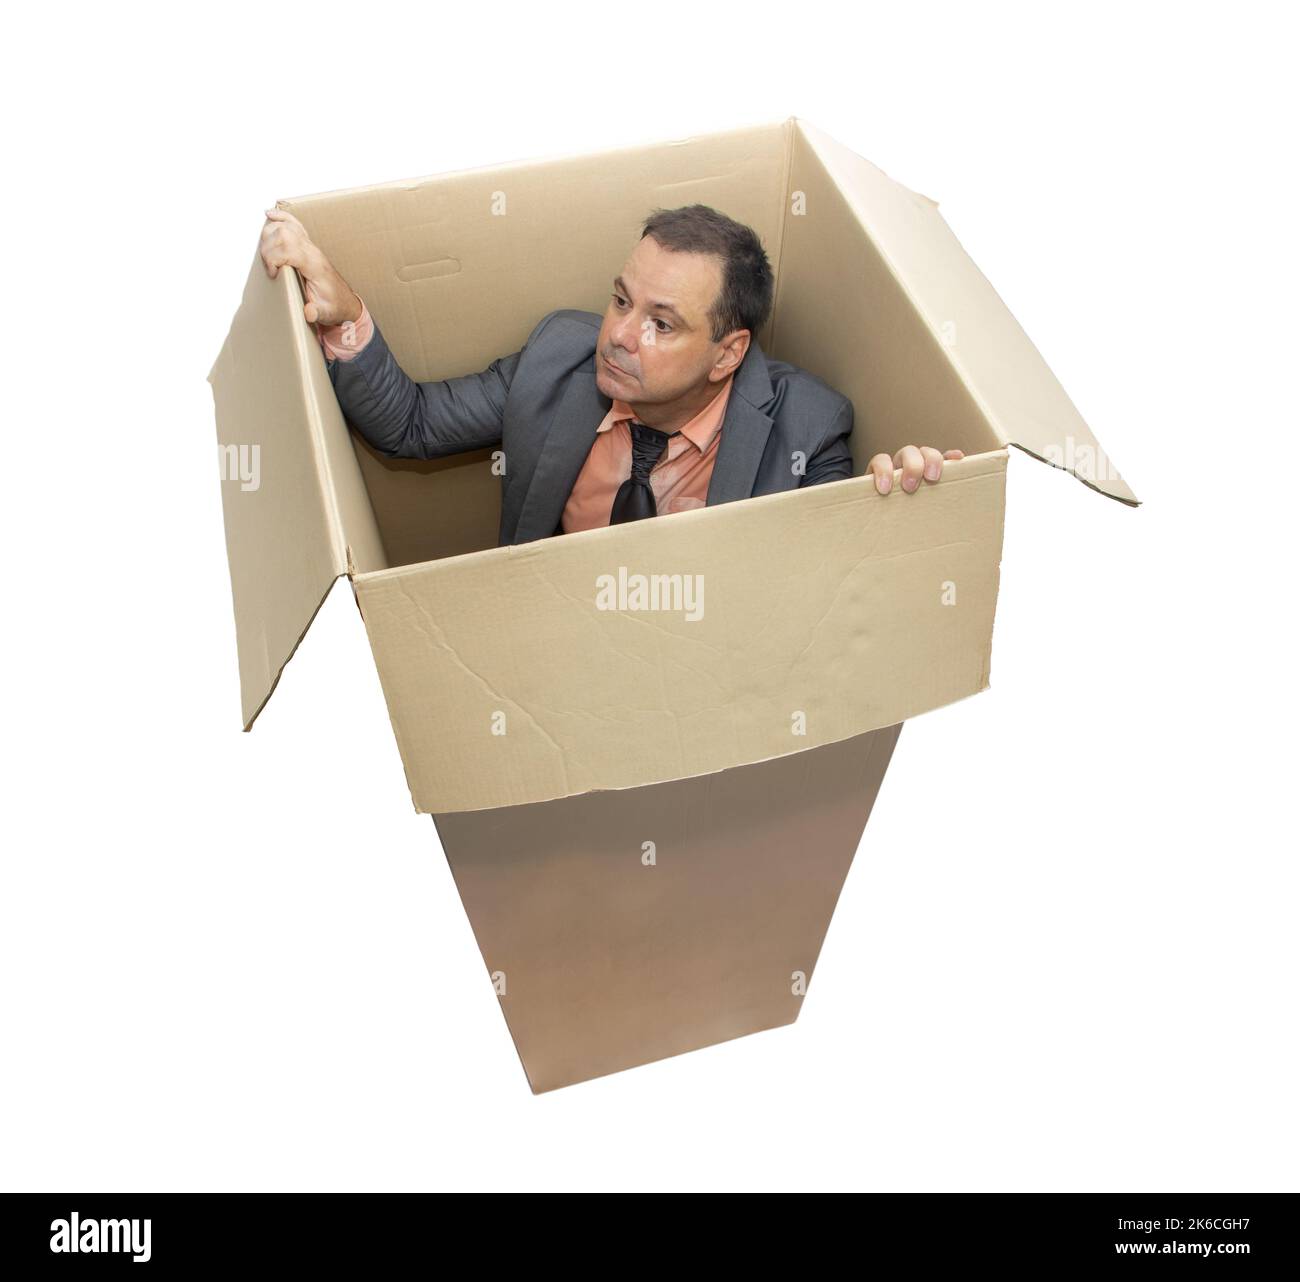 Un homme en costume se tient à l'intérieur d'une boîte en carton et essaie de regarder dehors, isolé sur fond blanc Banque D'Images